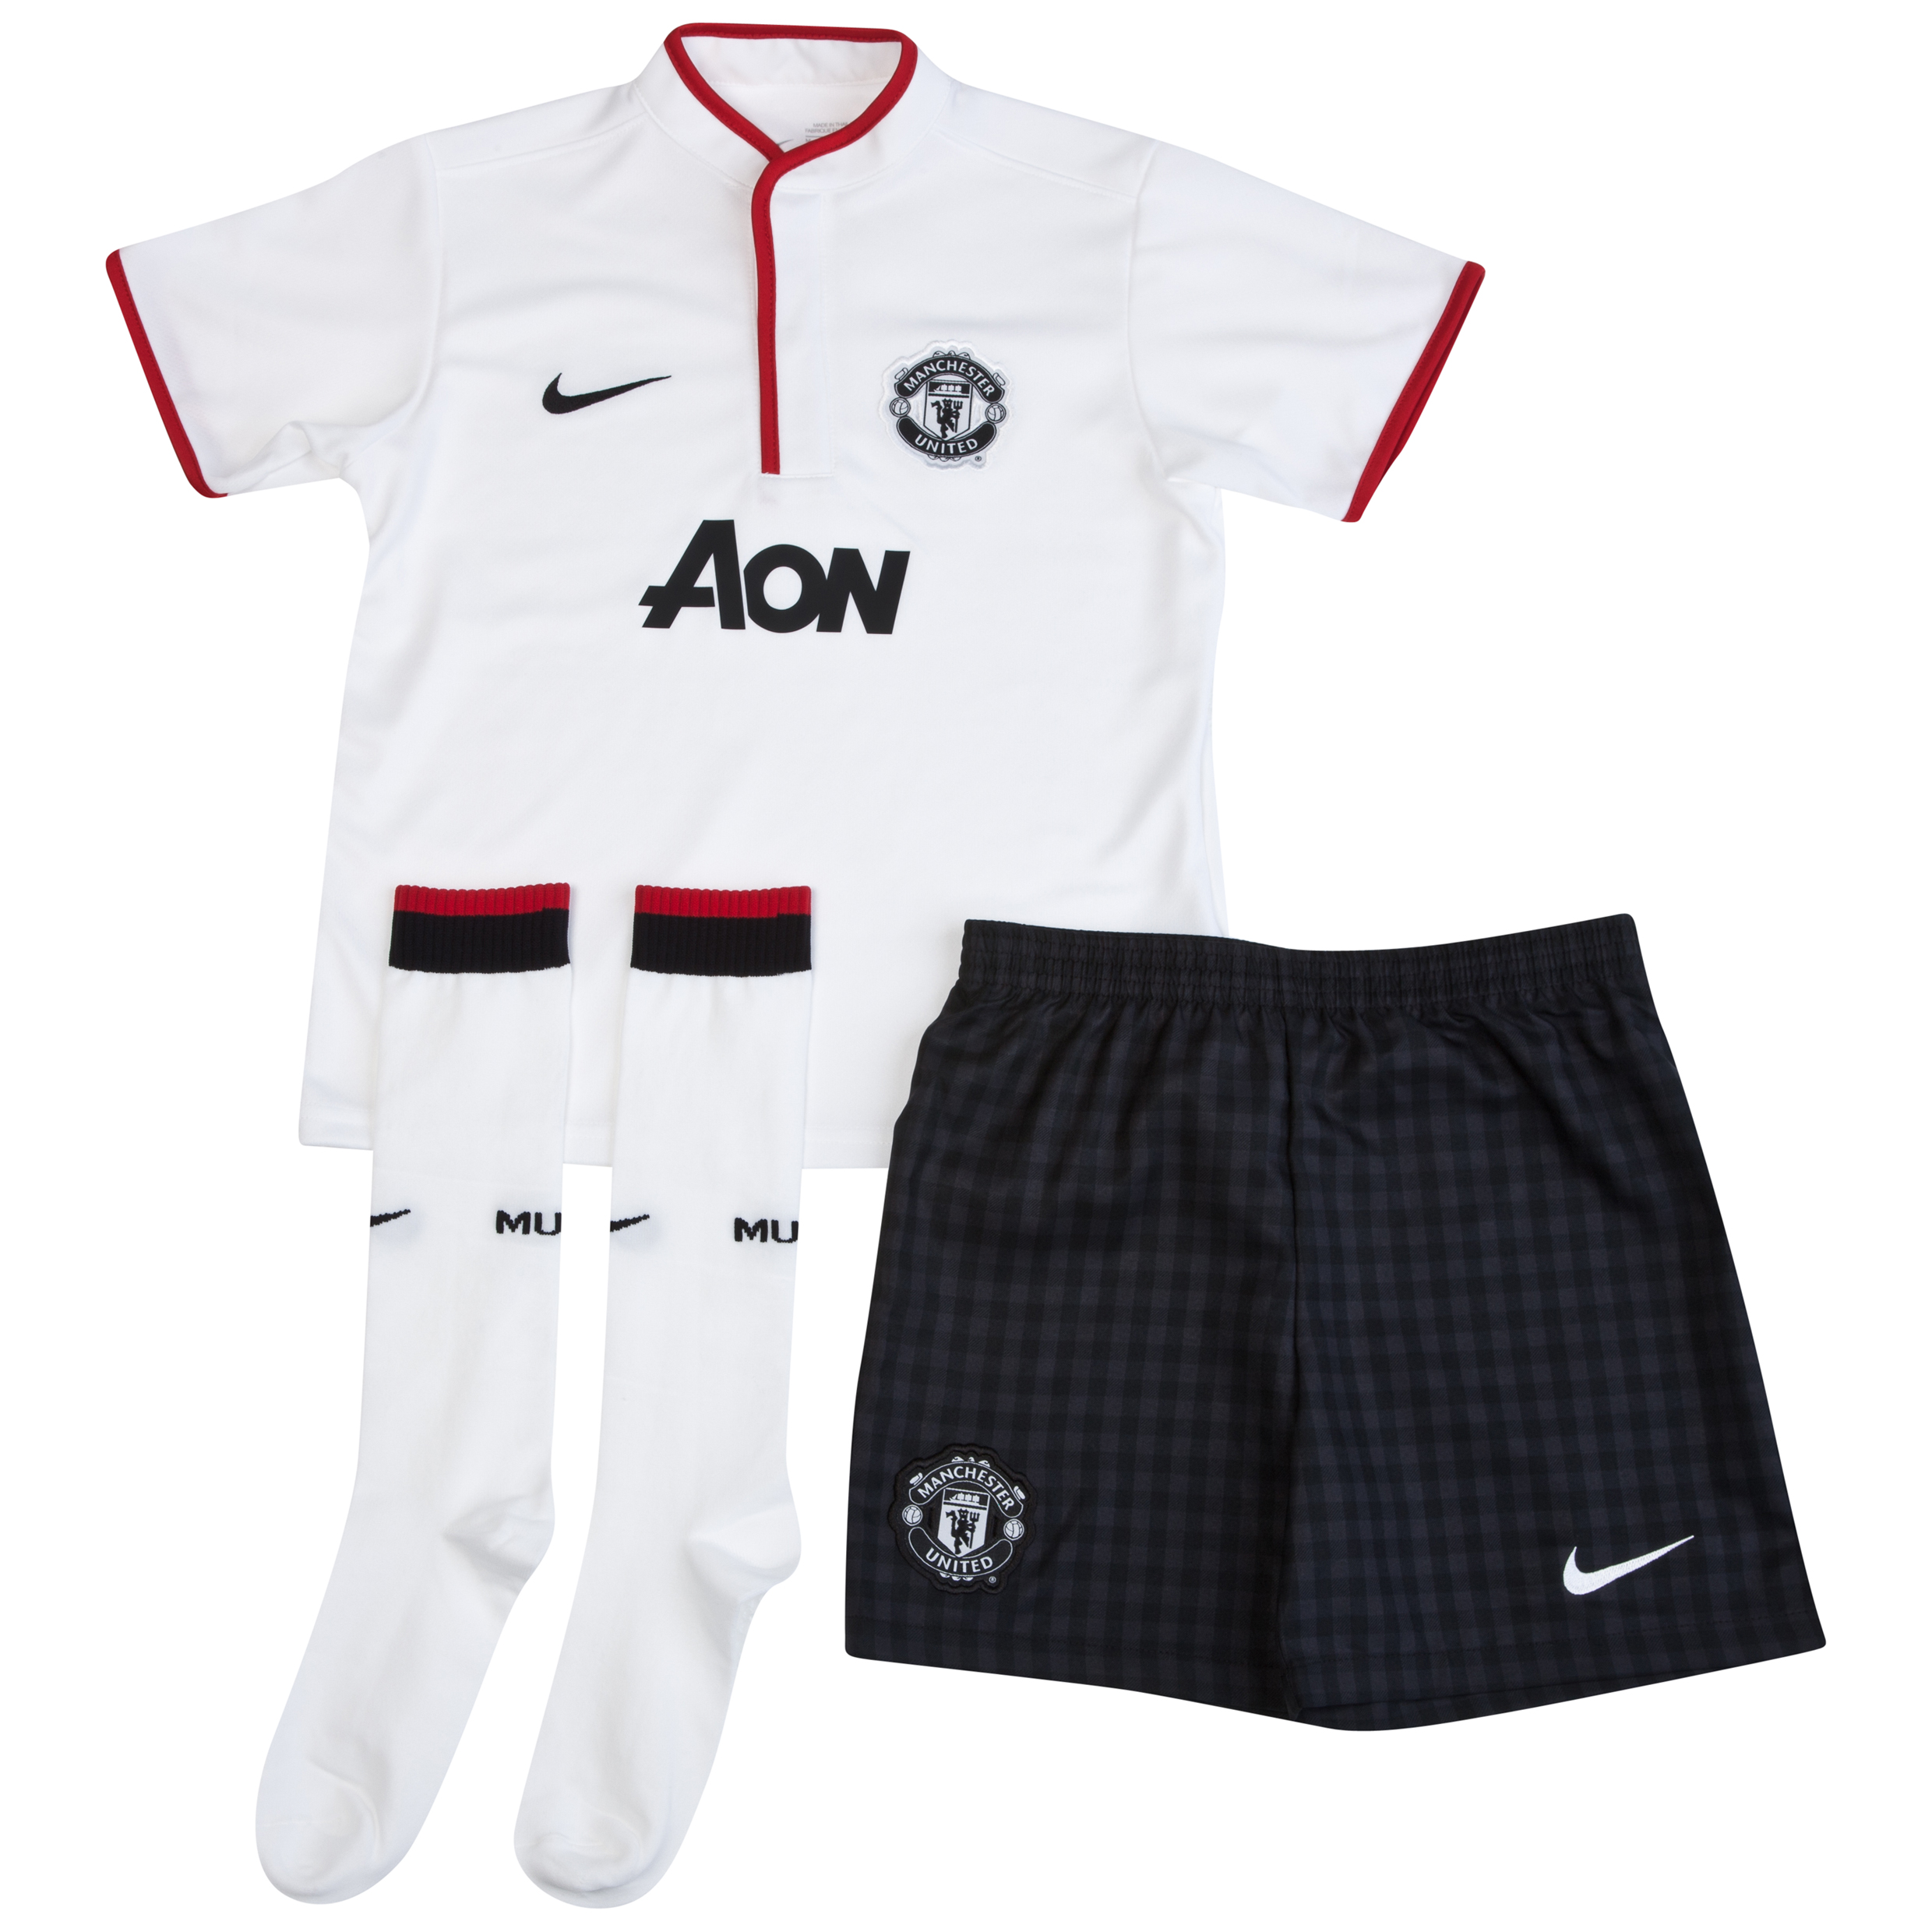 Manchester United Away Kit 2012/13 - Little Boys